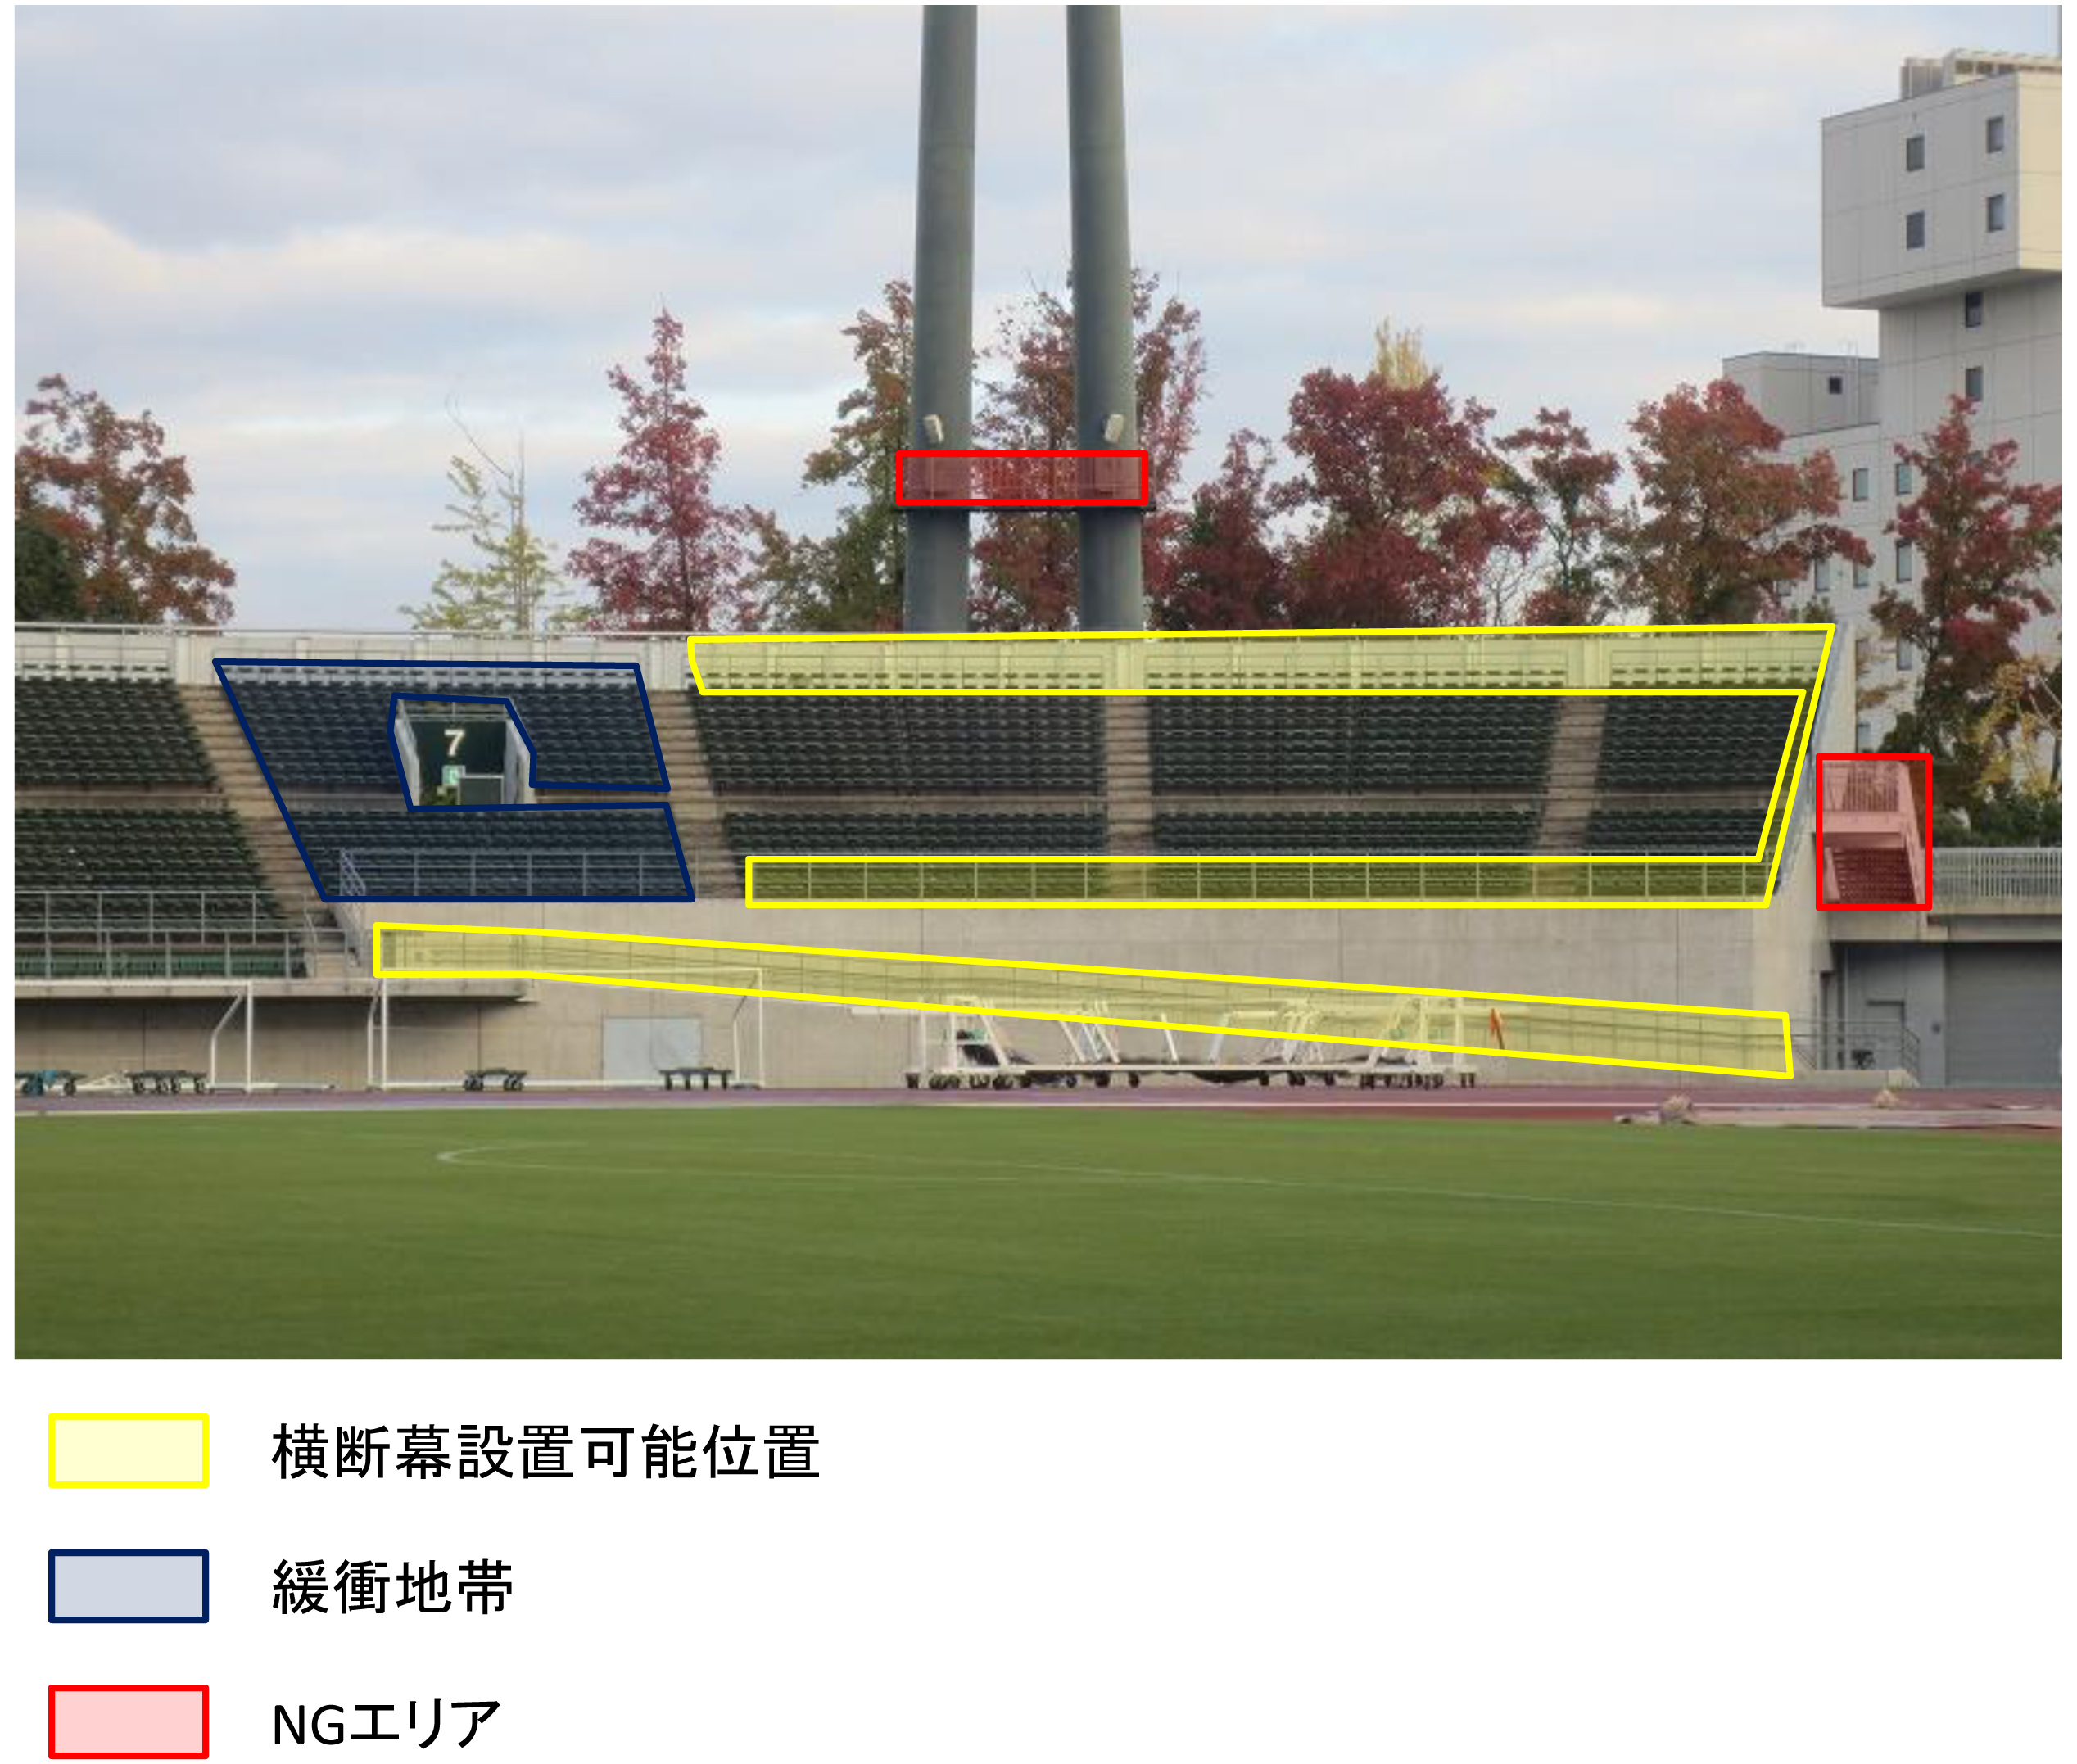 横断幕エリアの詳細について ビジターサポーターの皆様へ 試合 ファジアーノ岡山 Fagiano Okayama